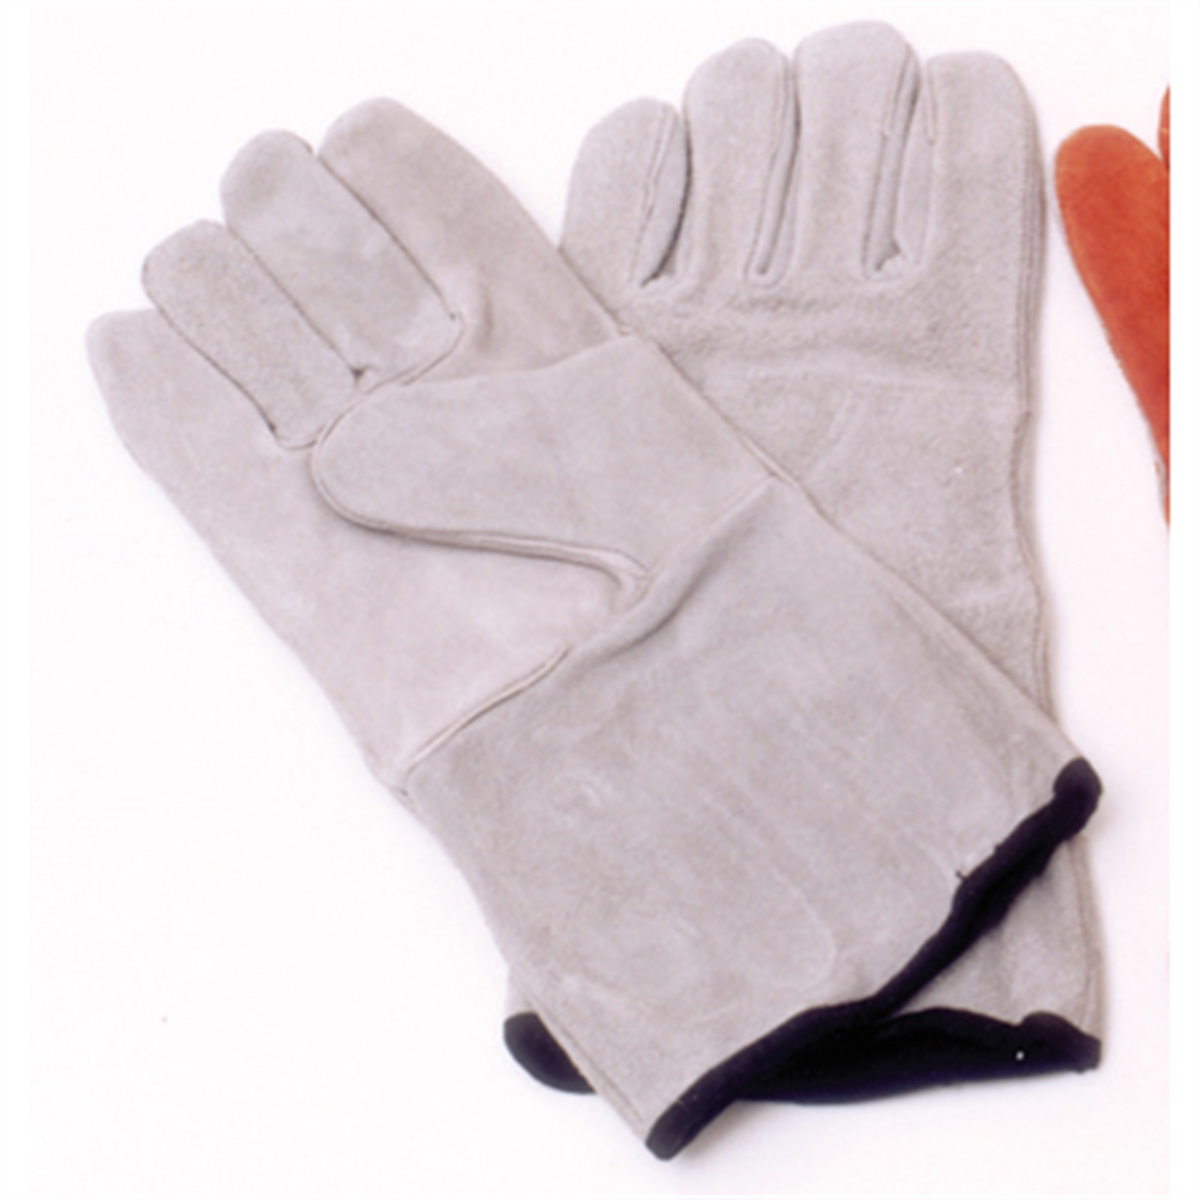 Sandblasting Gloves - Economy